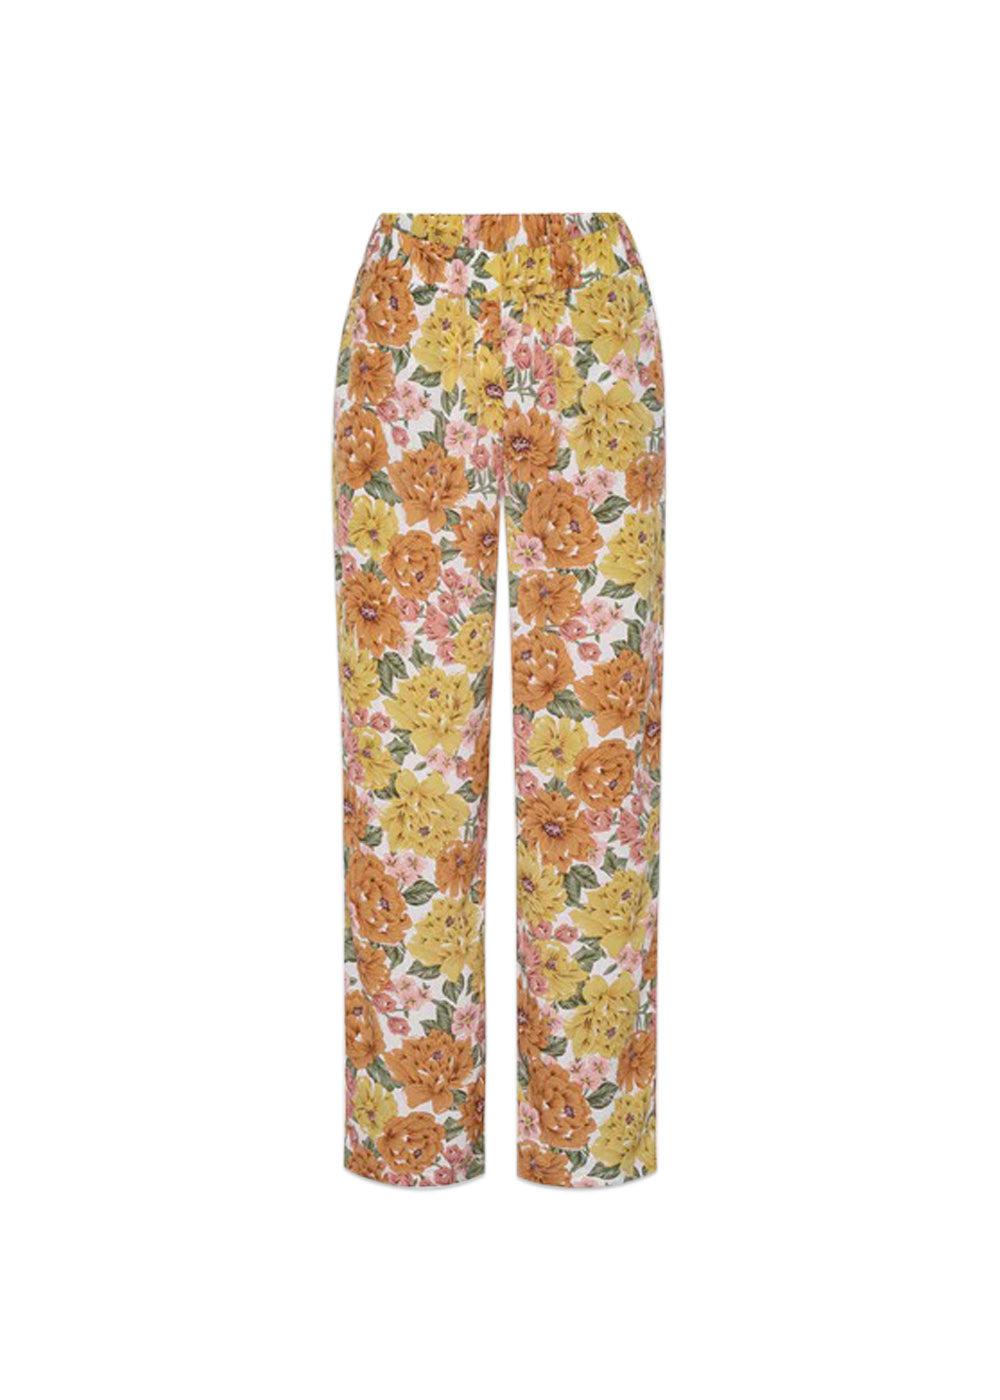 HUNKØN's Sadie trousers - Dusty Floral. Køb bukser her.